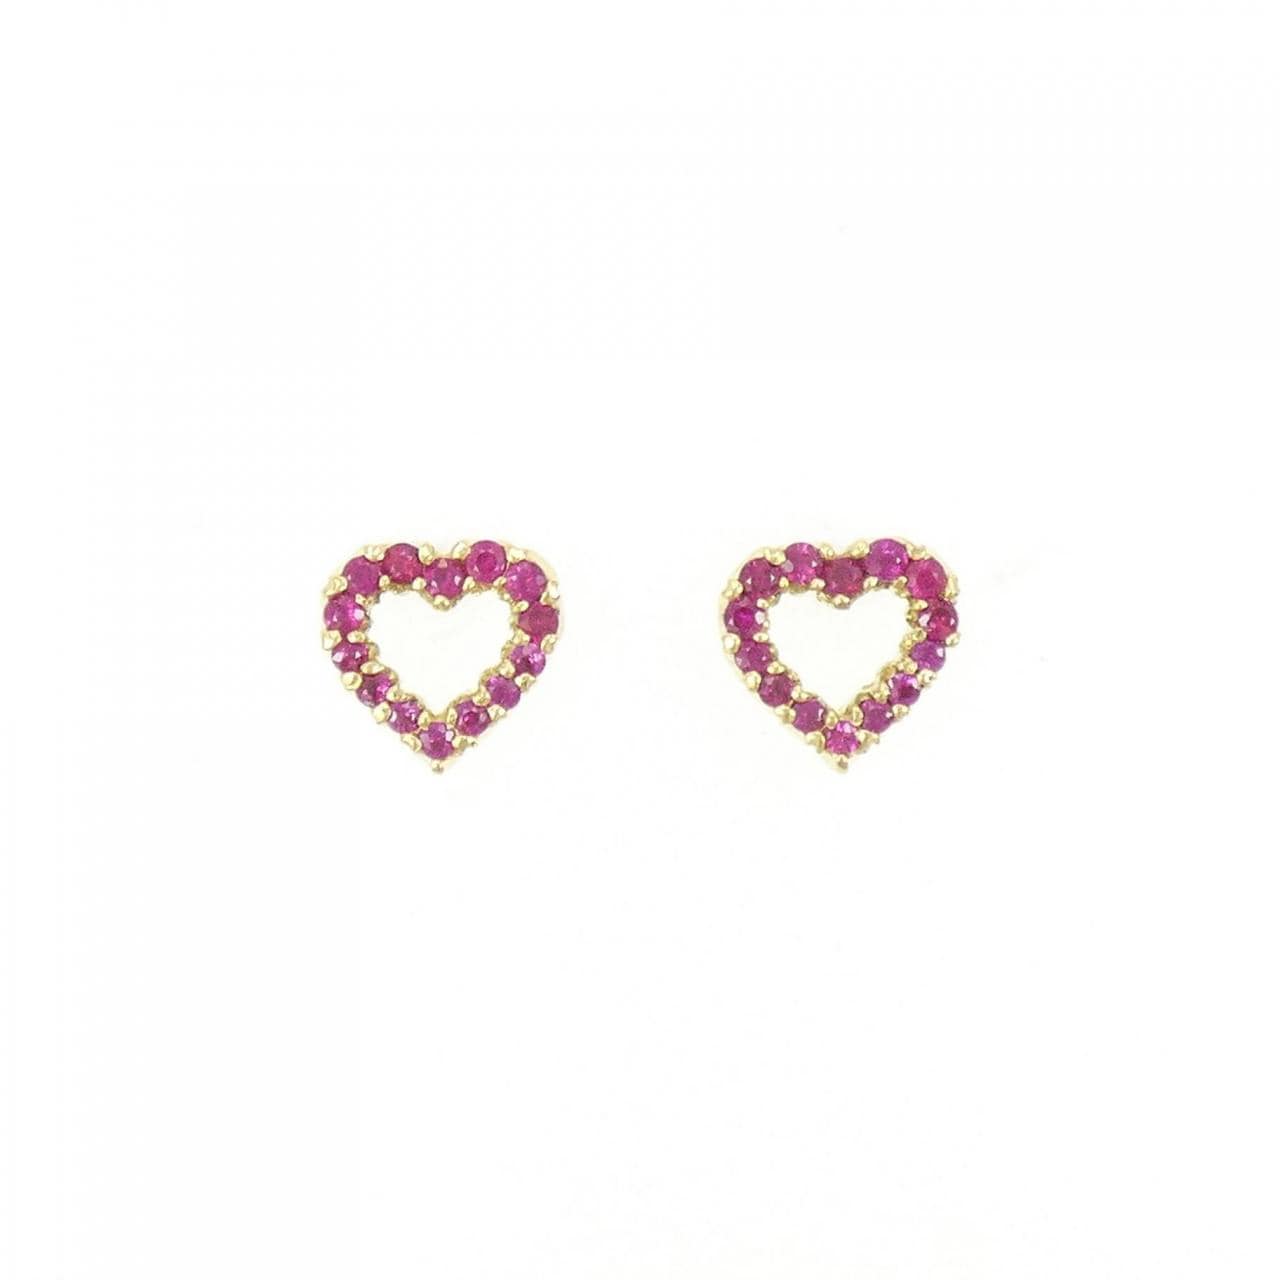 K18YG Heart Ruby Earrings 0.34CT